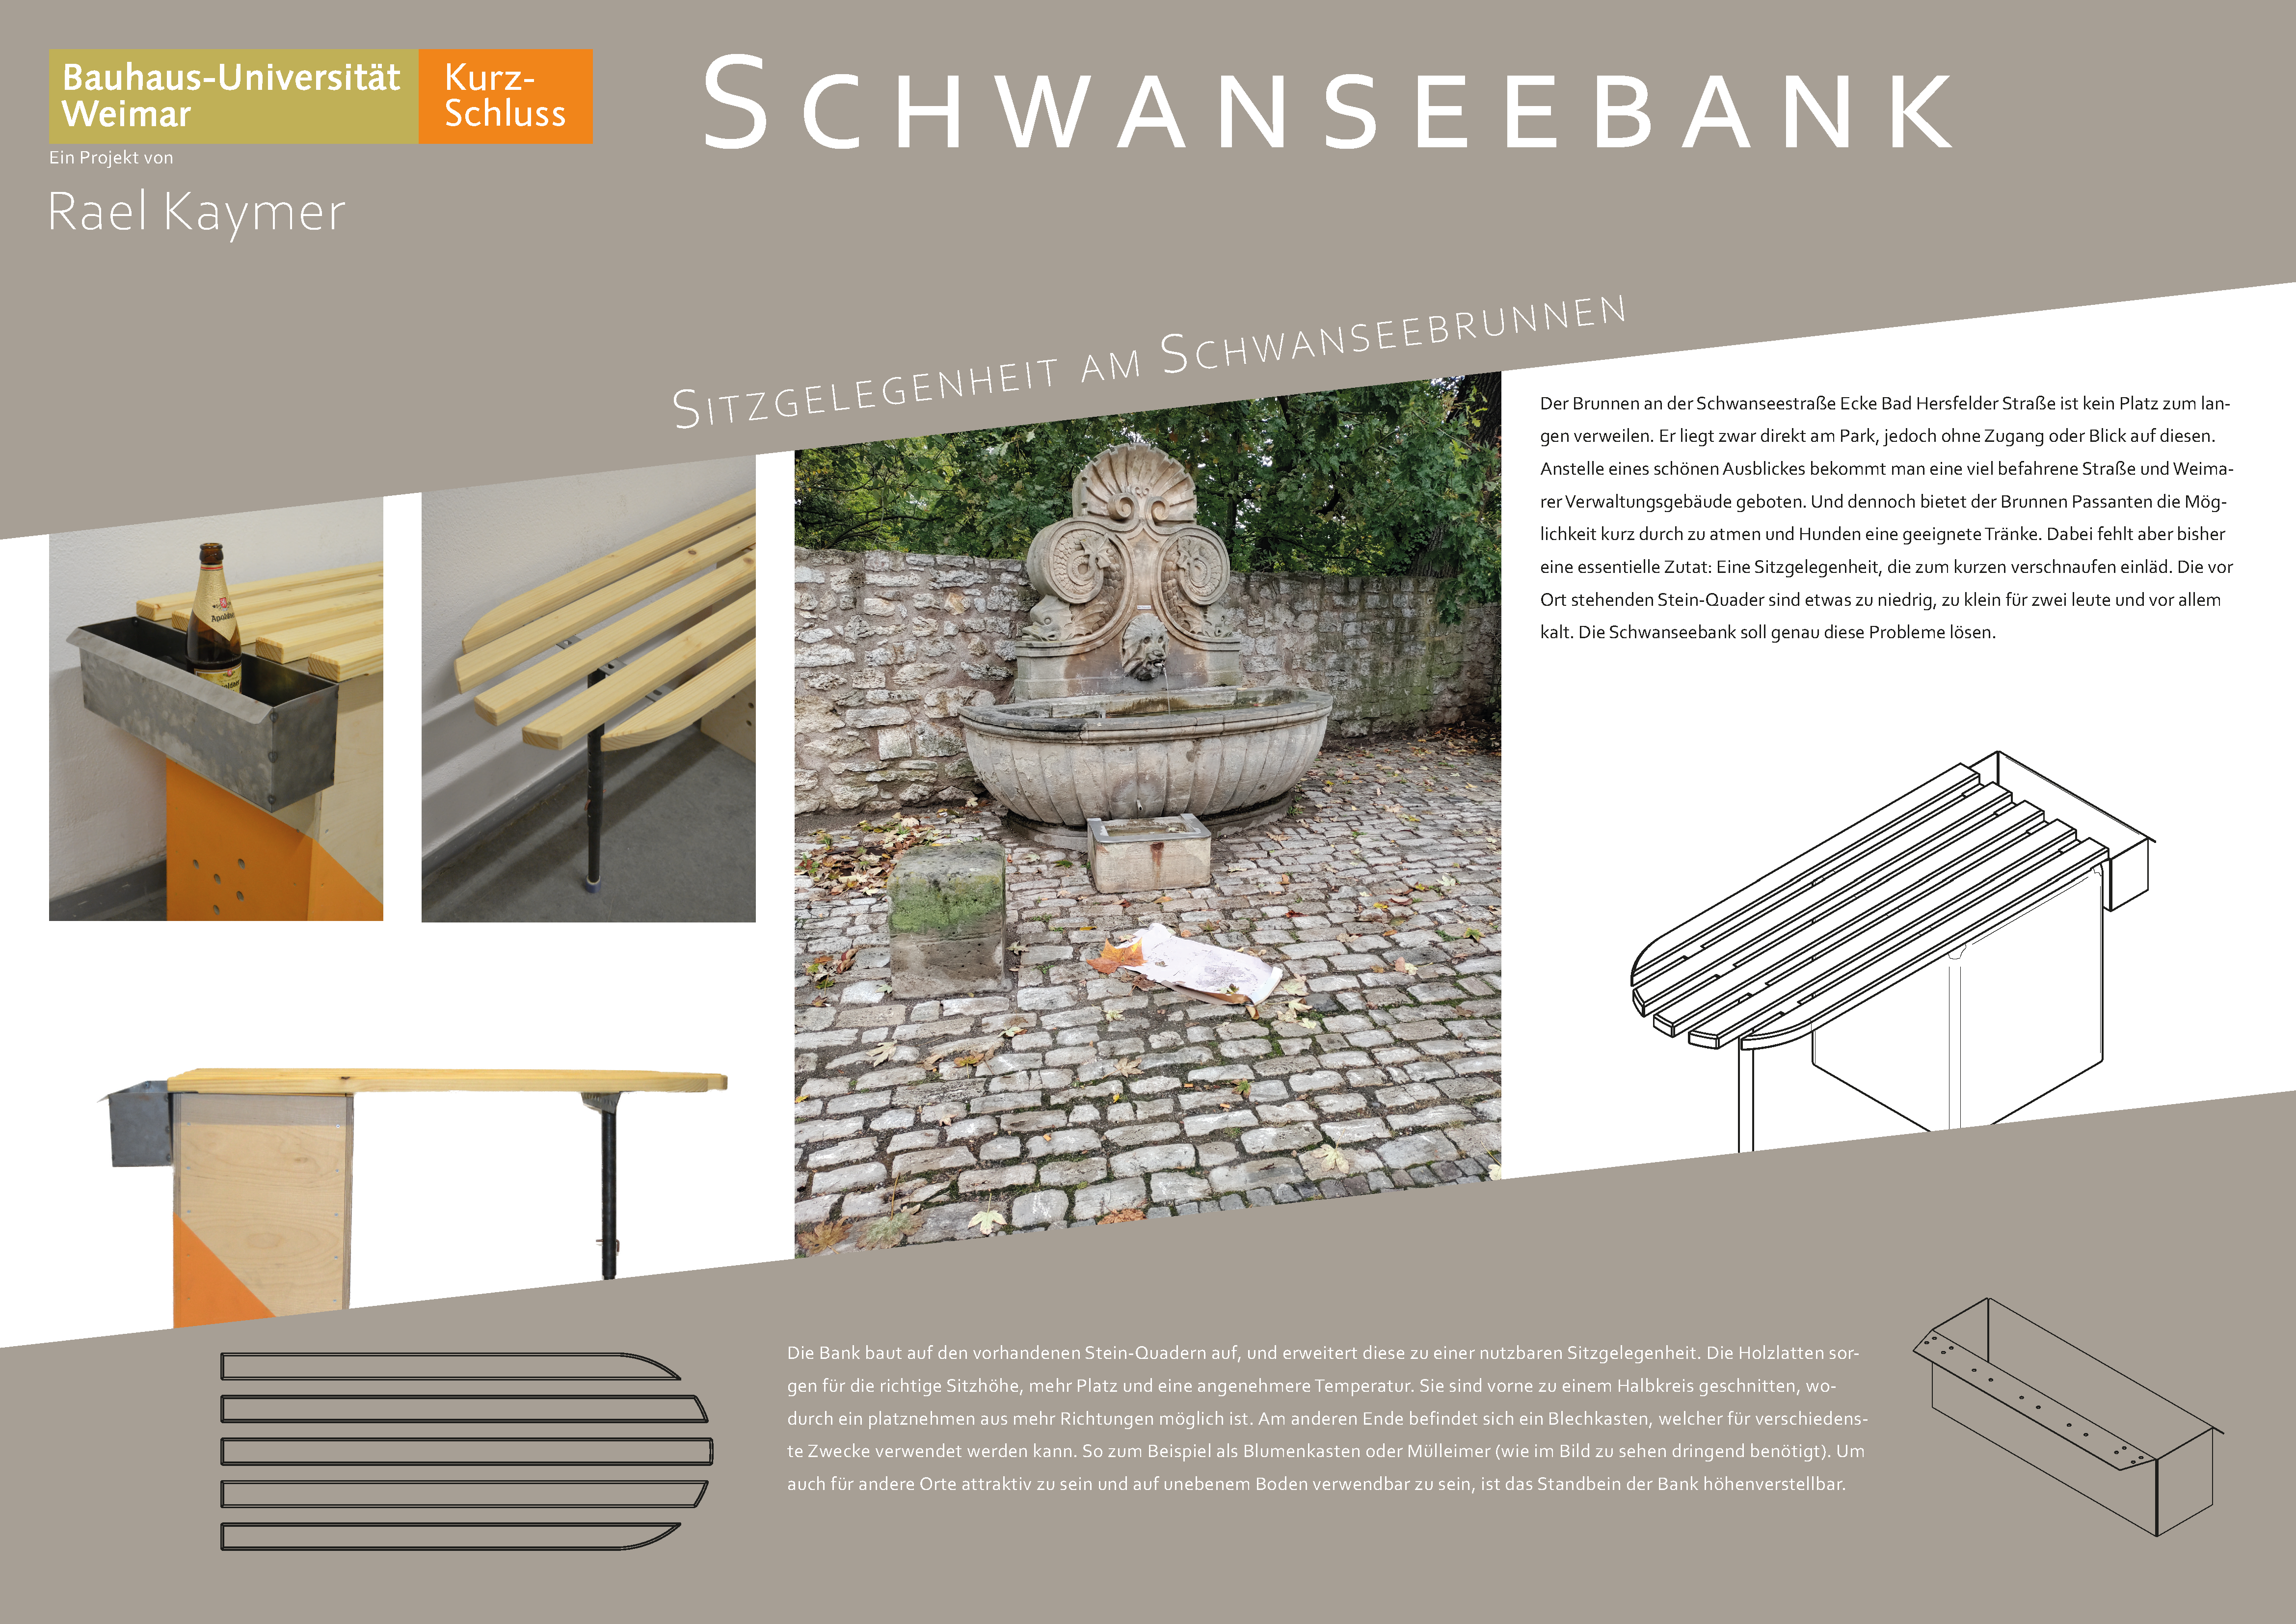 Plakat mit Grafiken/Illustrationen und Beschreibungstext für eine Sitzgelegenheit an einem spezifischen Ort in Weimar